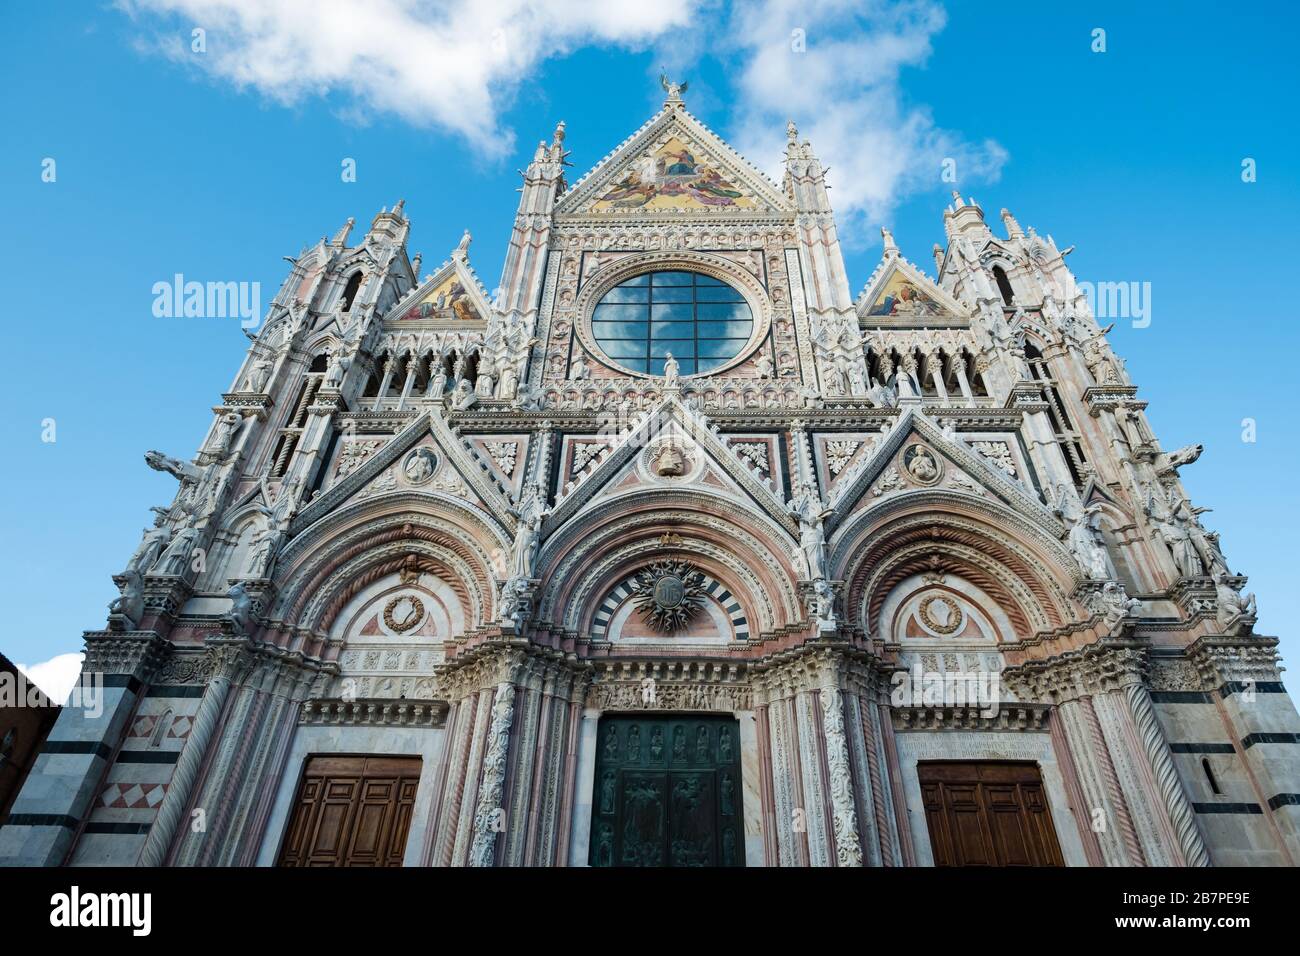 Si affaccia sull'esterno frontale decorato della Cattedrale di Siena. Intricate pietre, colorate immagini religiose e cielo blu riflesso nella rosetta Foto Stock